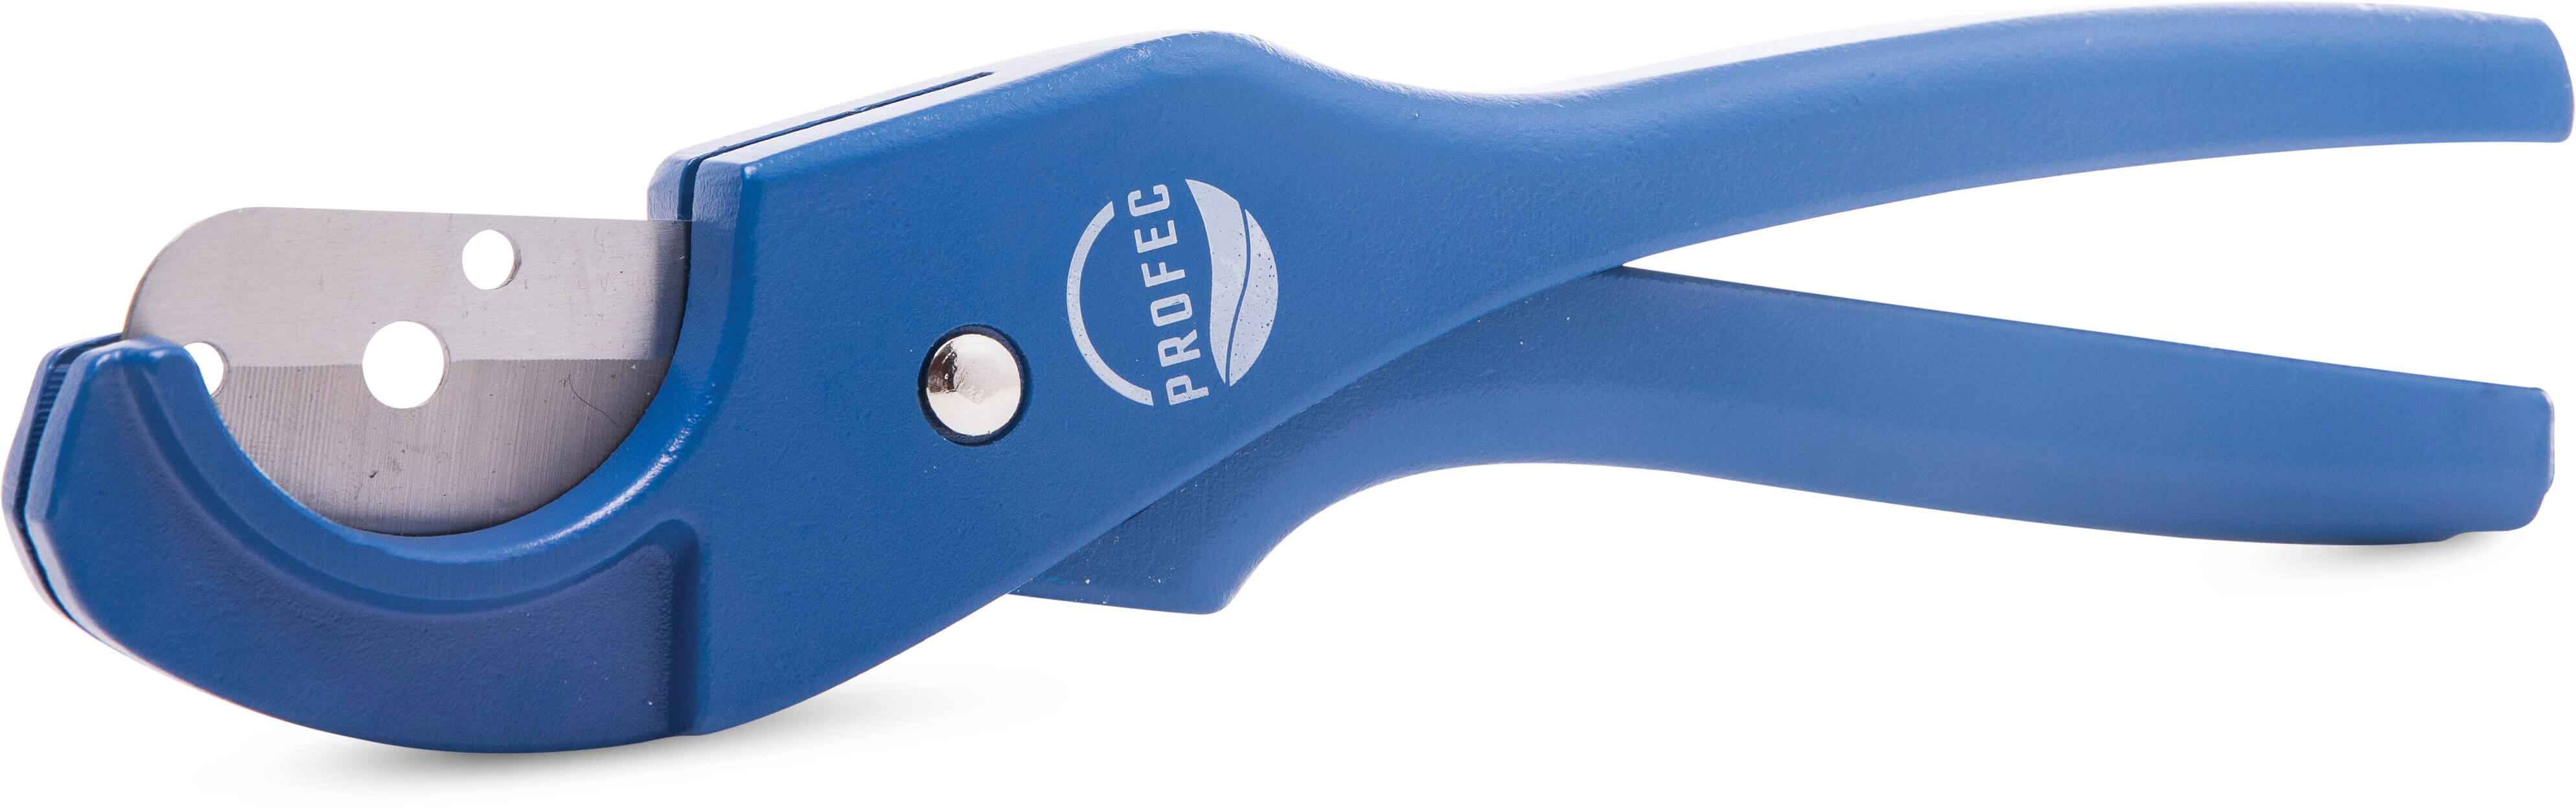 Profec Pipe cutter 6-40 mm blue